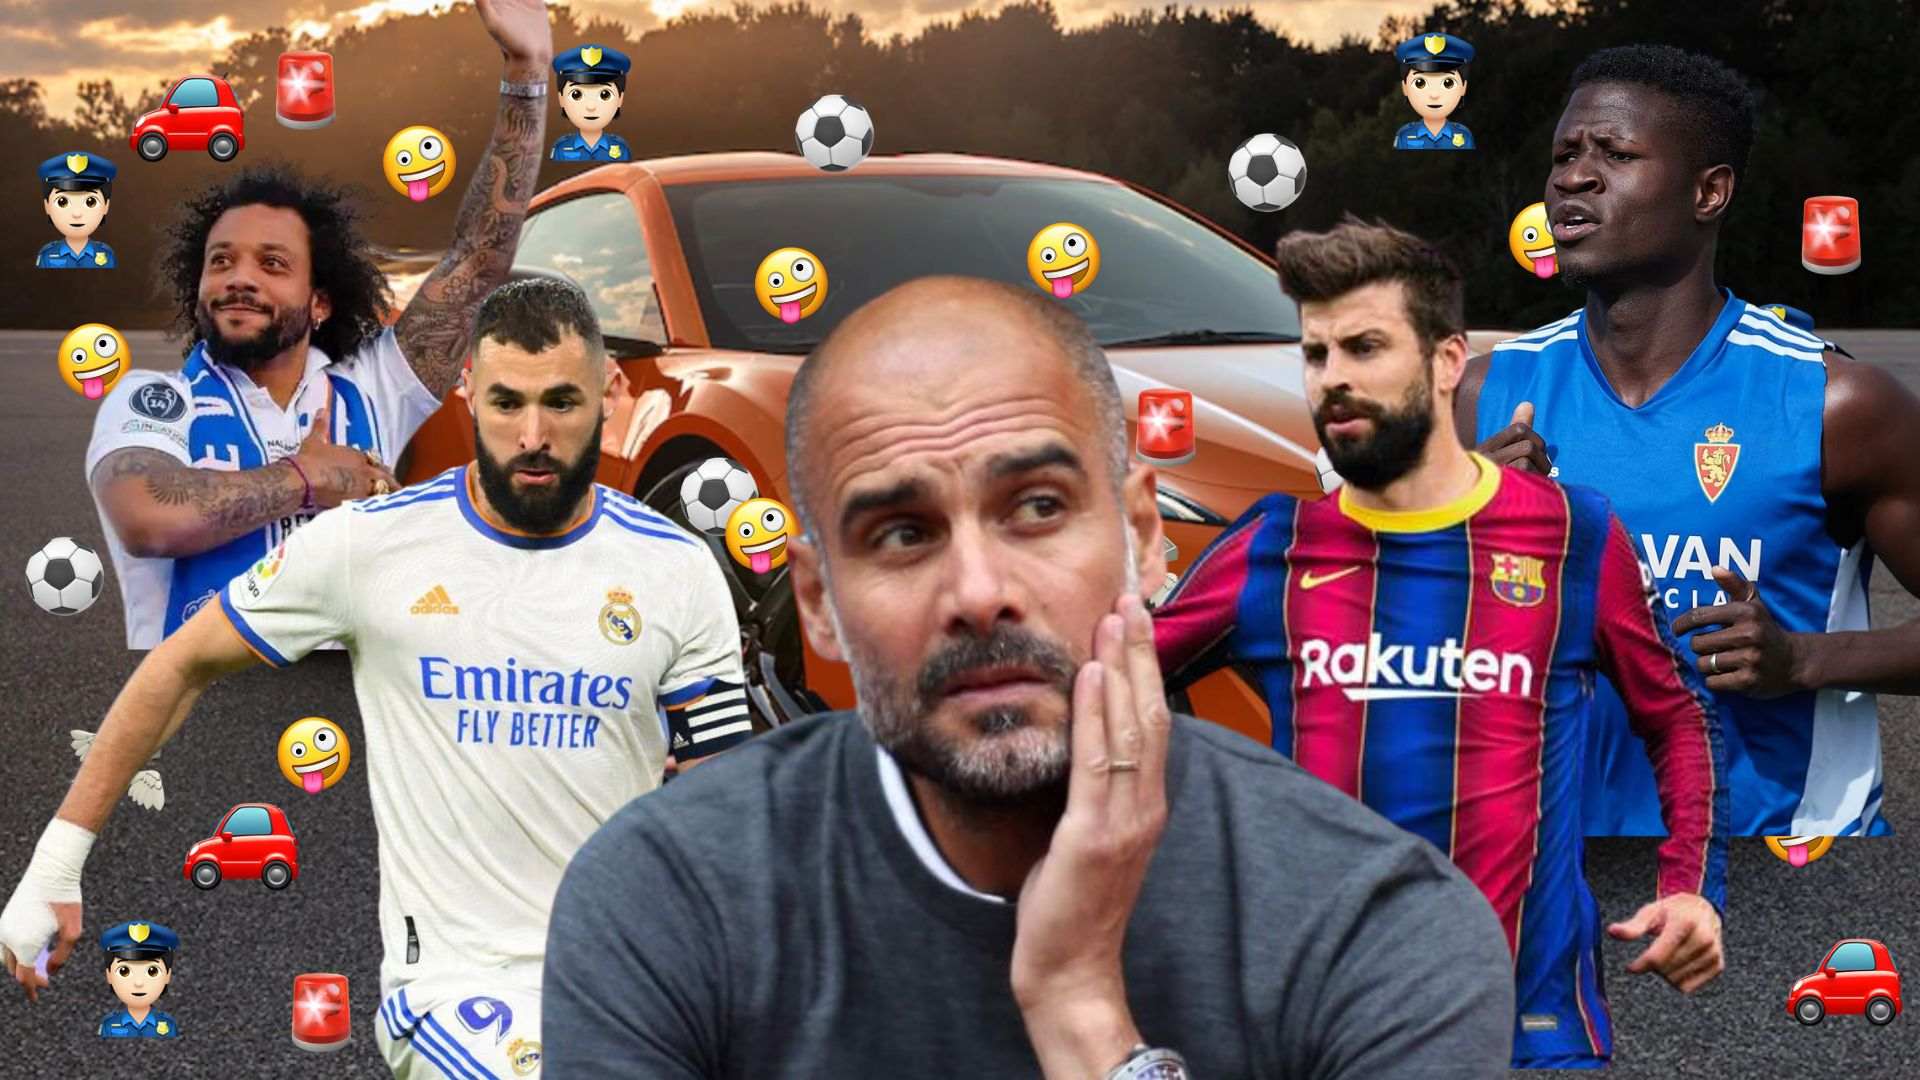 Les multes al volant més sonades a futbolistes i entrenadors de futbol: De Guardiola a Benzema